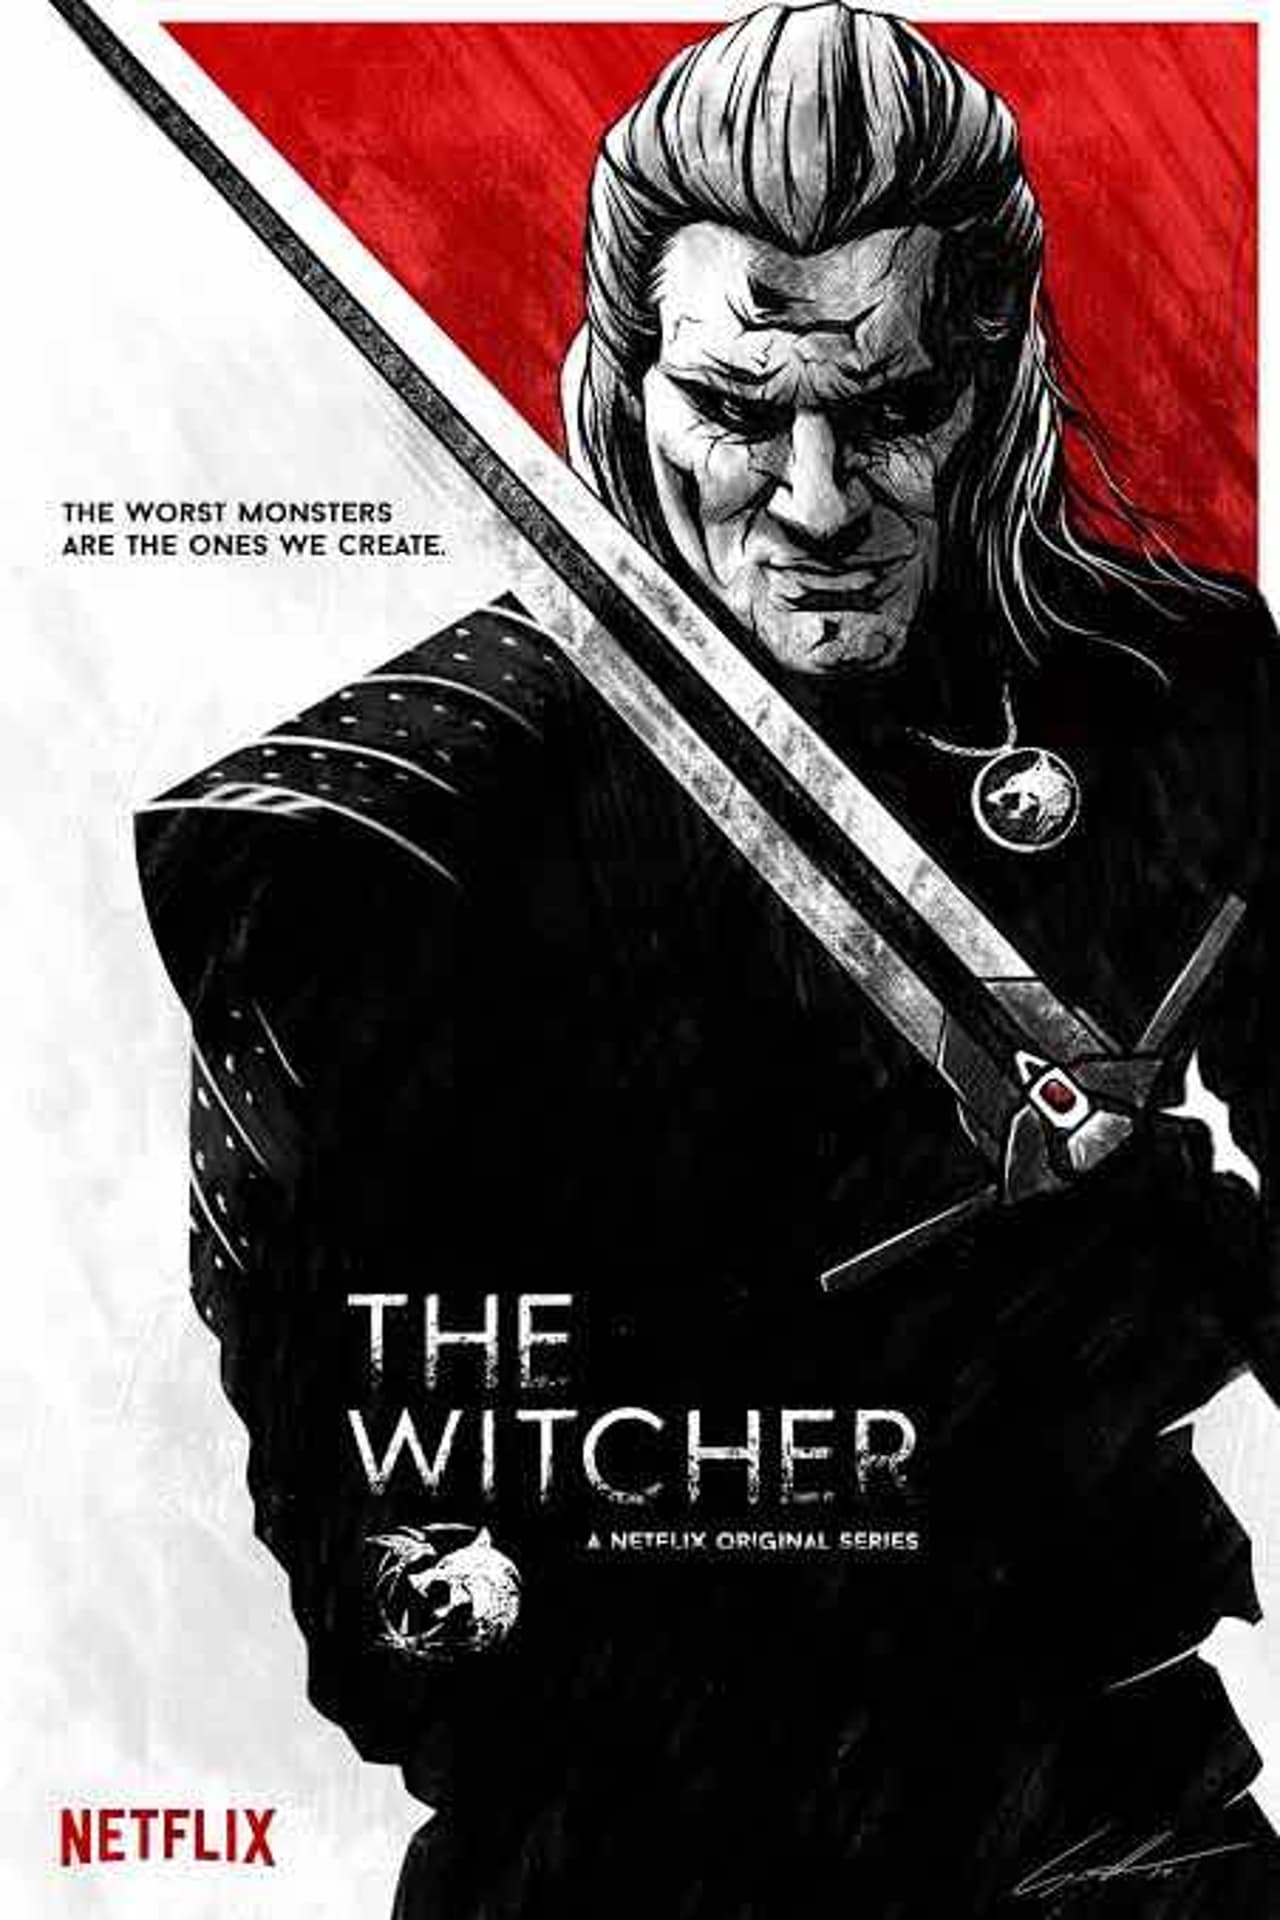 The Witcher (2019) S1 EP01&EP08 640Kbps 24Fps 48Khz 5.1Ch DD+ NF E-AC3 Turkish Audio TAC